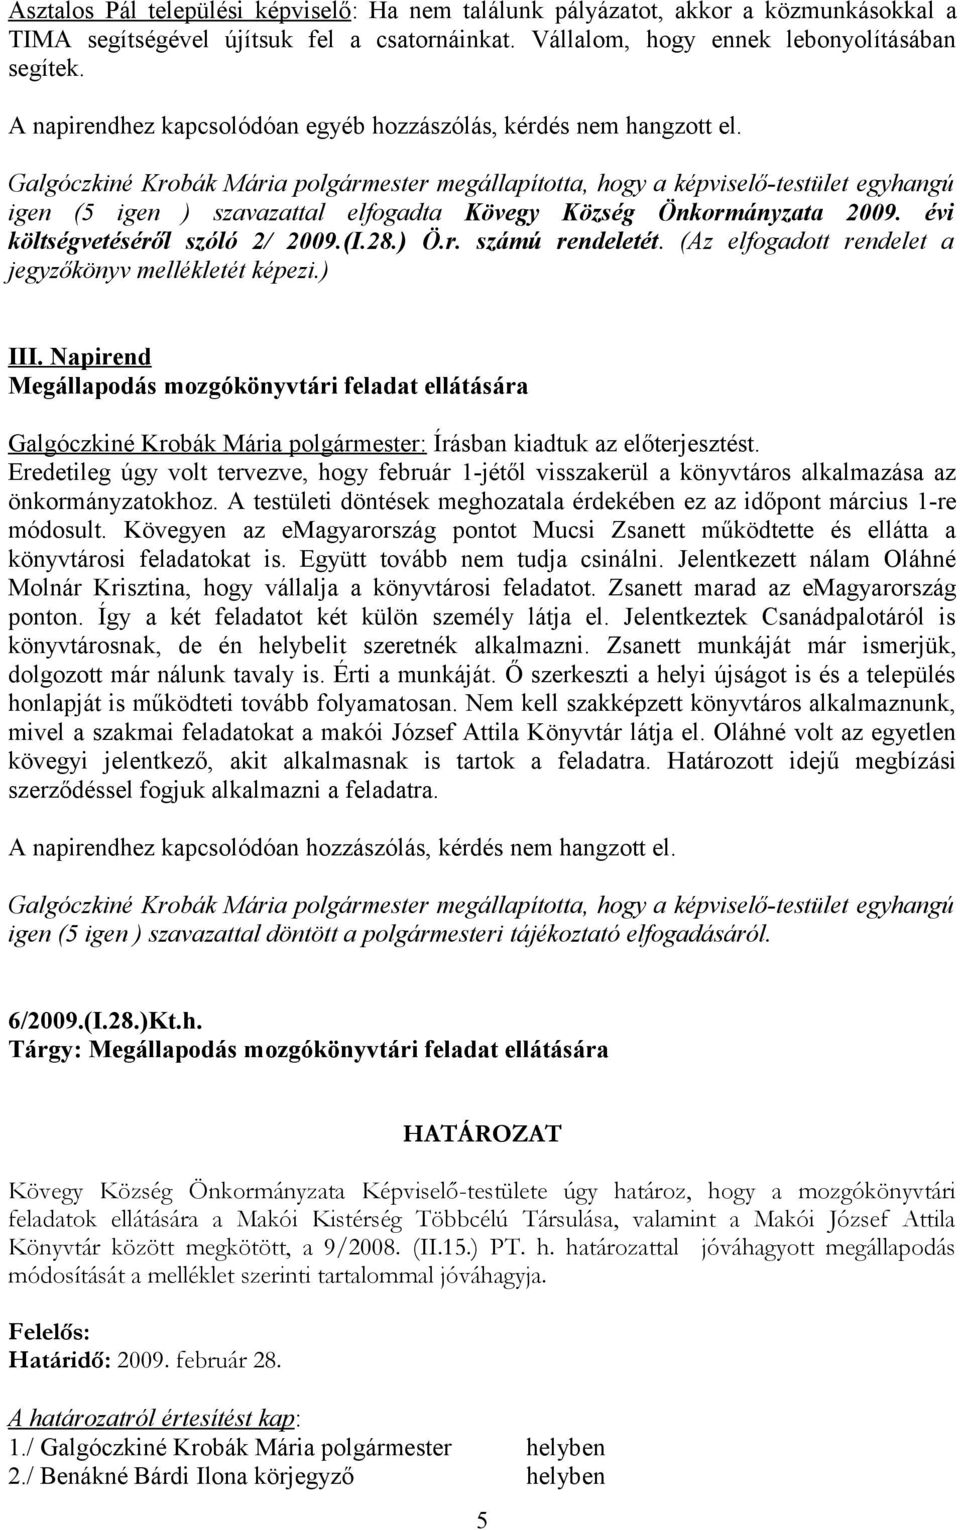 Galgóczkiné Krobák Mária polgármester megállapította, hogy a képviselő-testület egyhangú igen (5 igen ) szavazattal elfogadta Kövegy Község Önkormányzata 2009. évi költségvetéséről szóló 2/ 2009.(I.